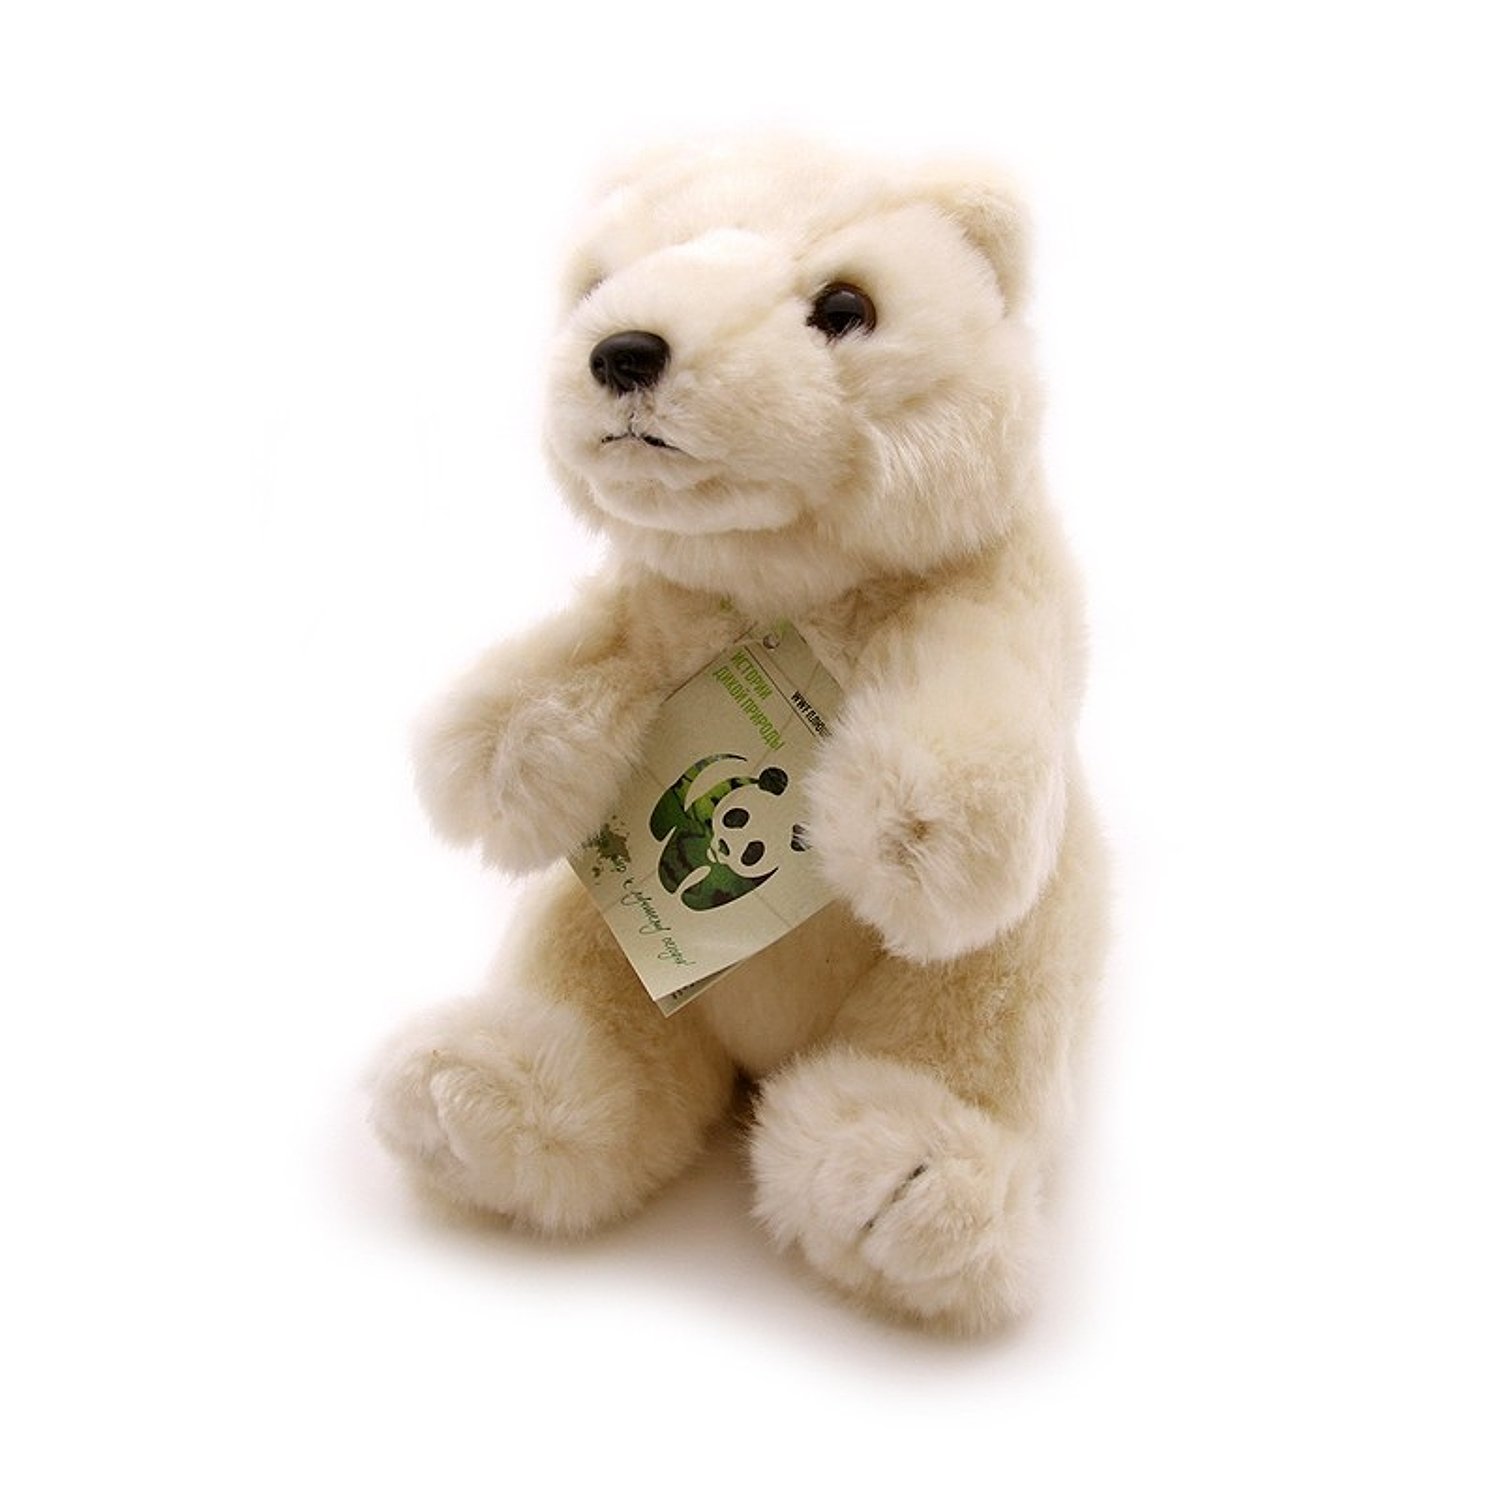 Мягкая игрушка Медведь полярный WWF 18 см погремушка fresk полярный медведь белая